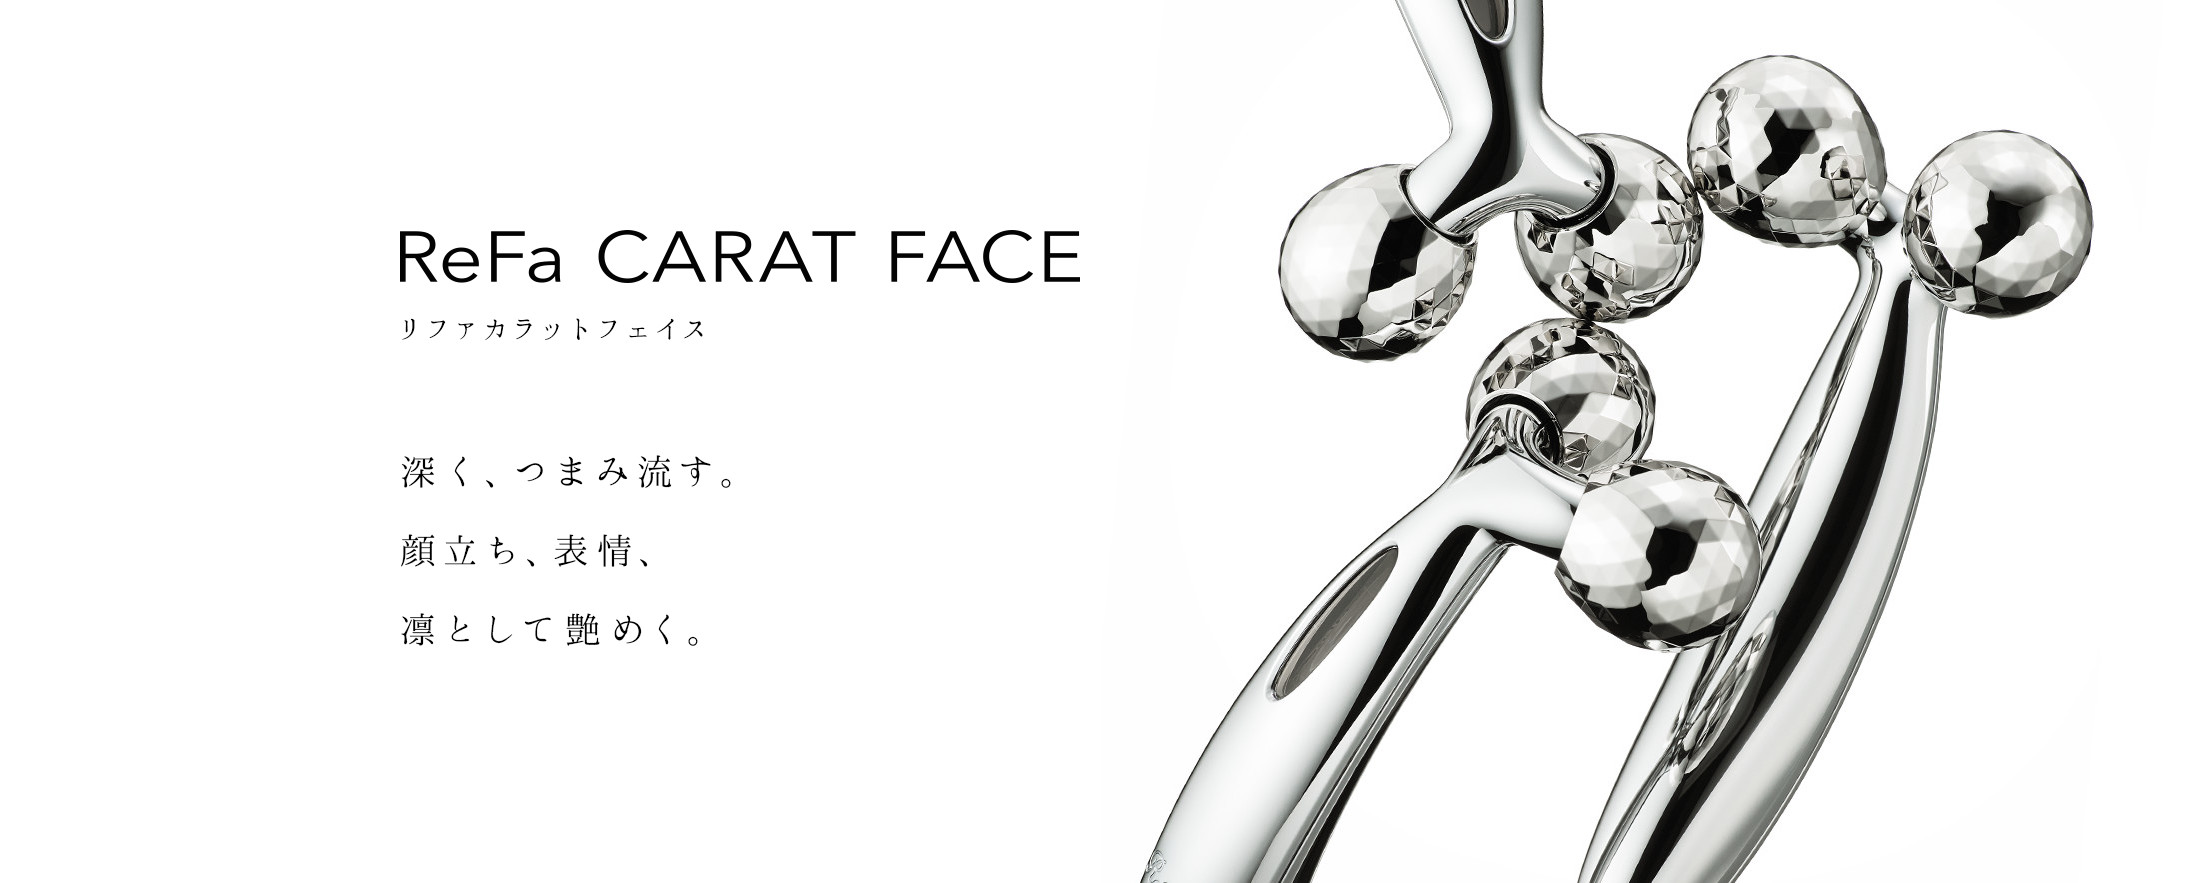 リファカラットフェイス - ReFa CARAT FACE | 商品情報 | ReFa（リファ）公式ブランドサイト